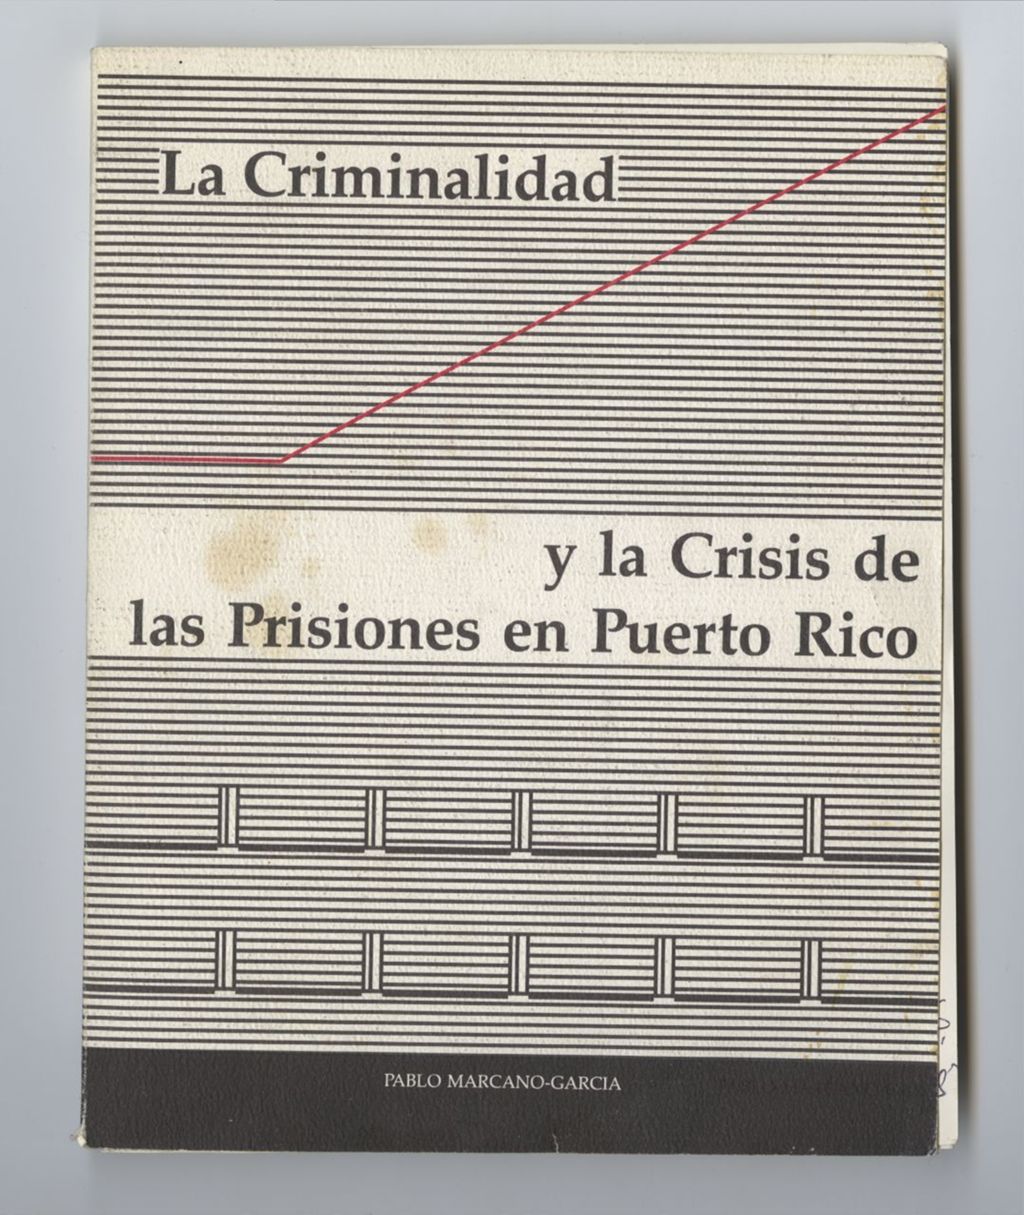 La Criminalidad y la Crisis de las Priones en Puerto Rico (Front and back)